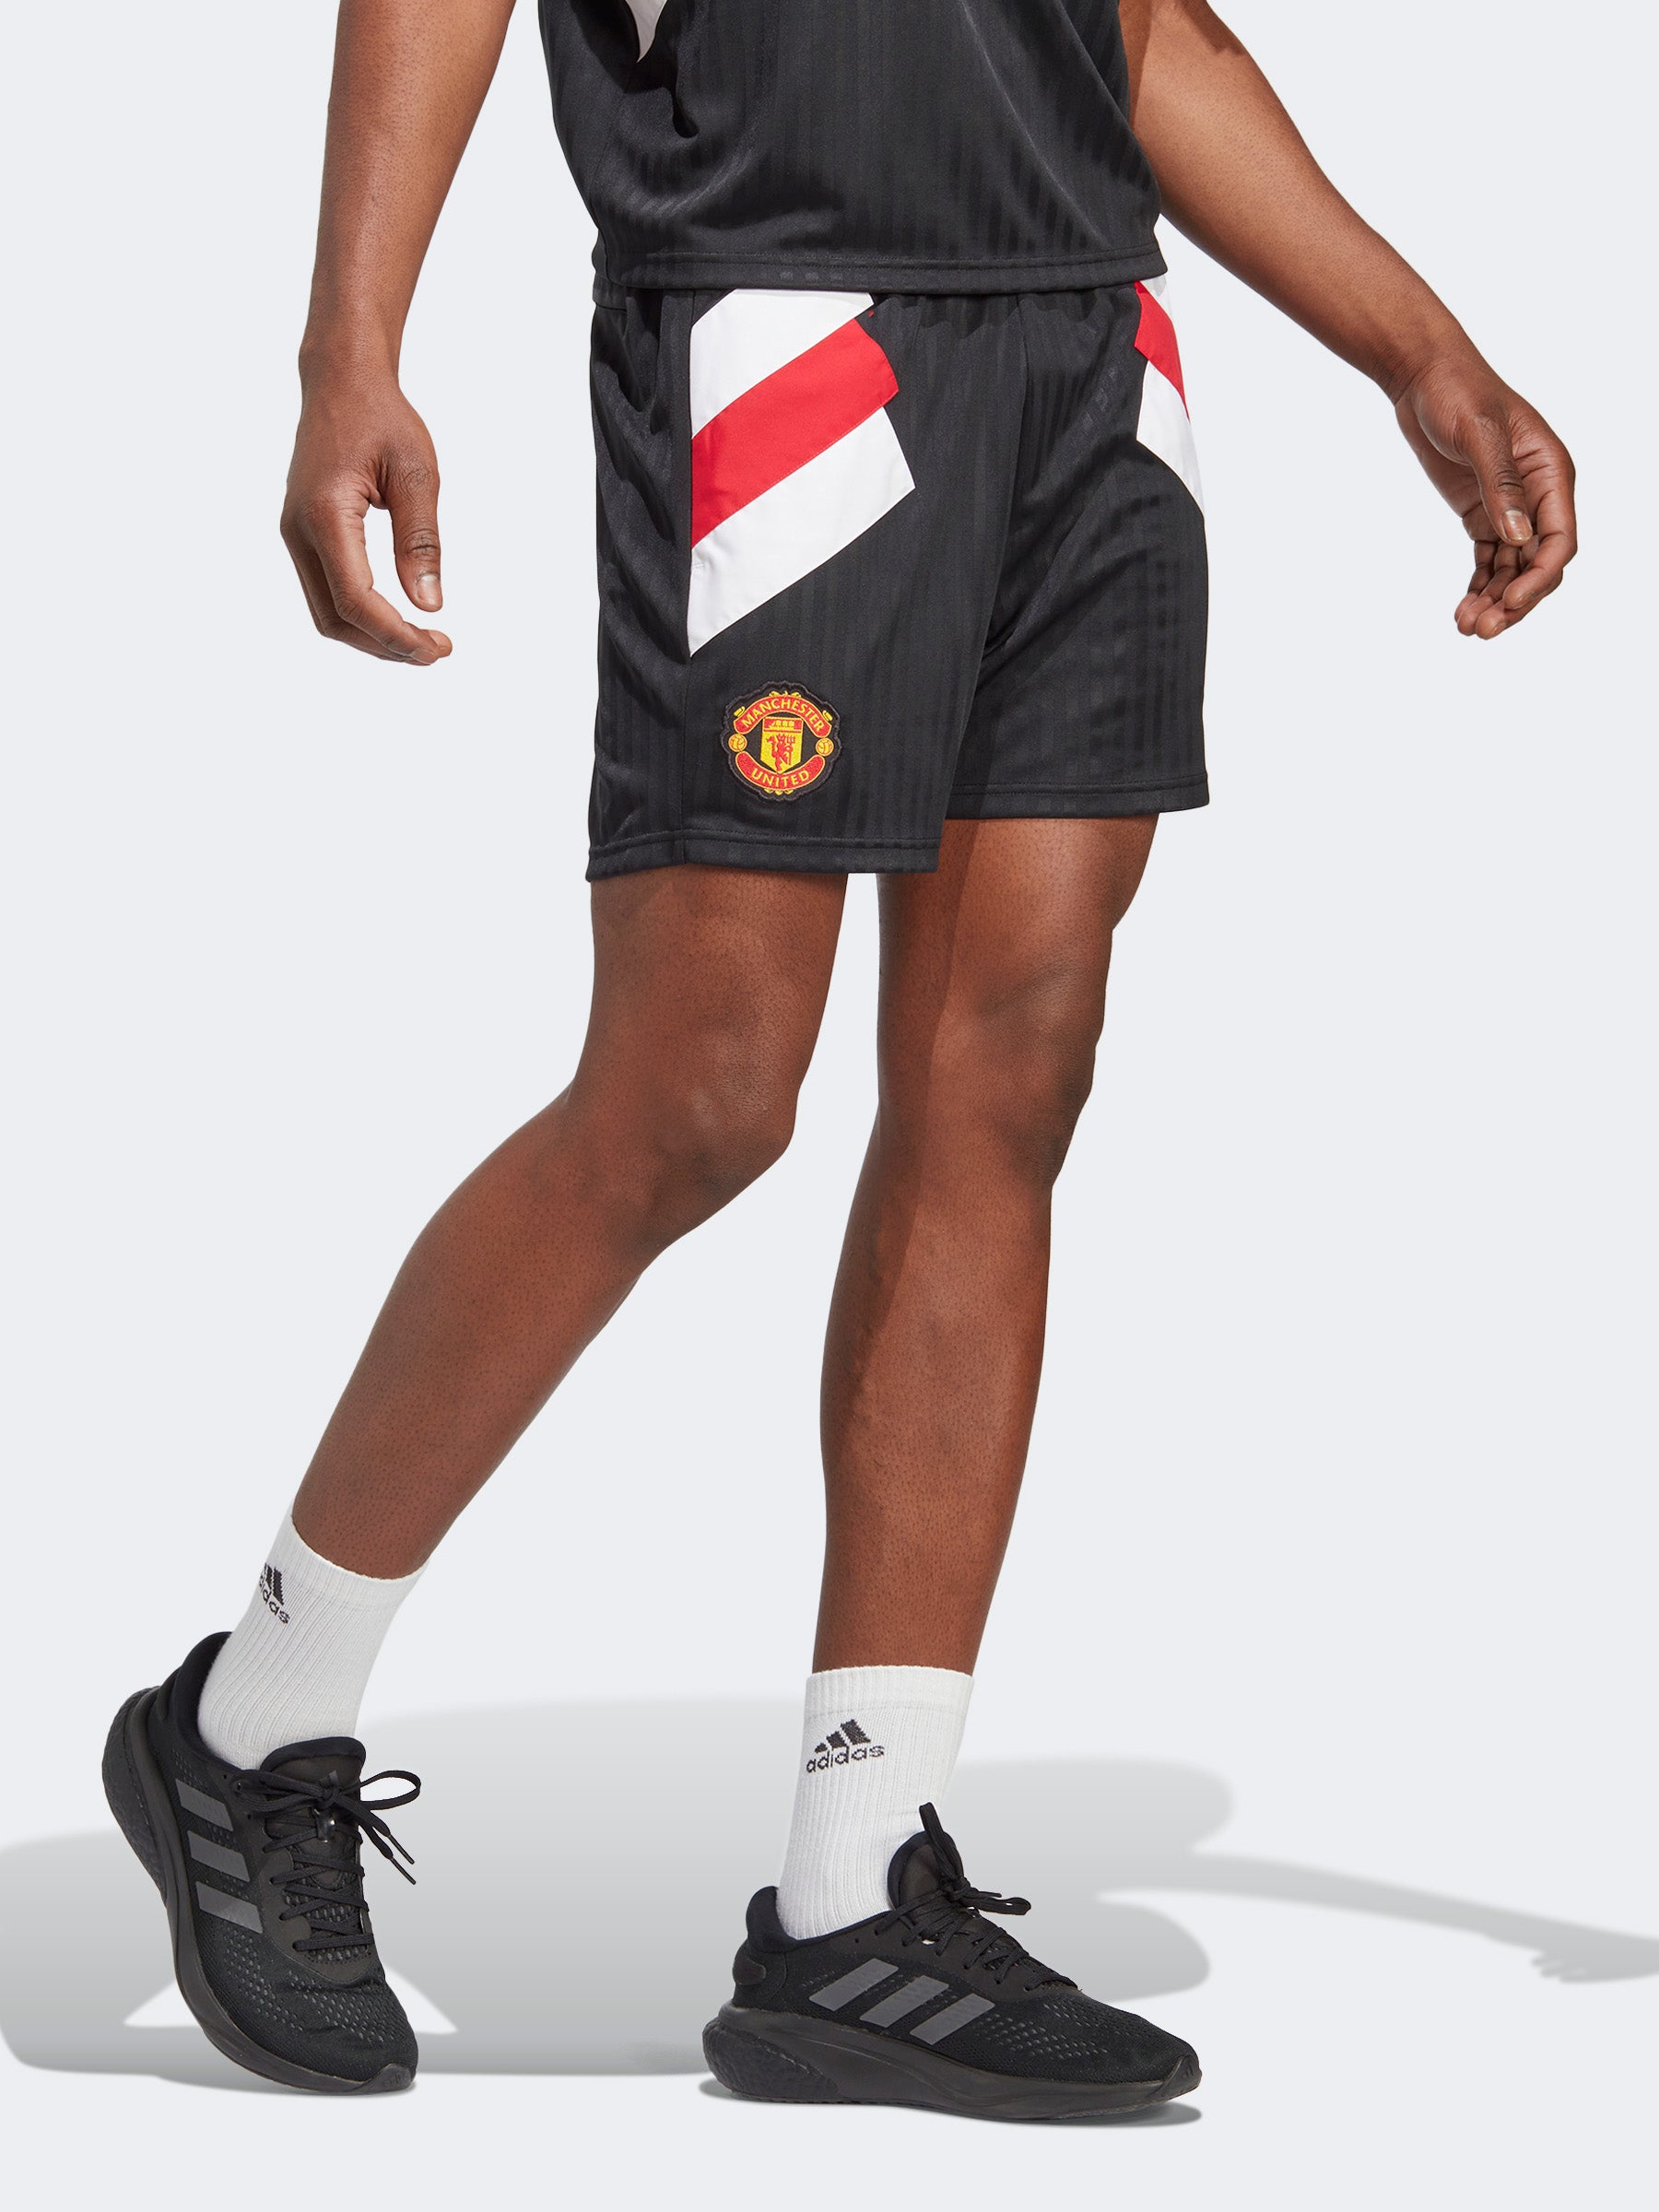 מכנסי אימון קצרים מנצ'סטר יונייטד- adidas performance|אדידס פרפורמנס